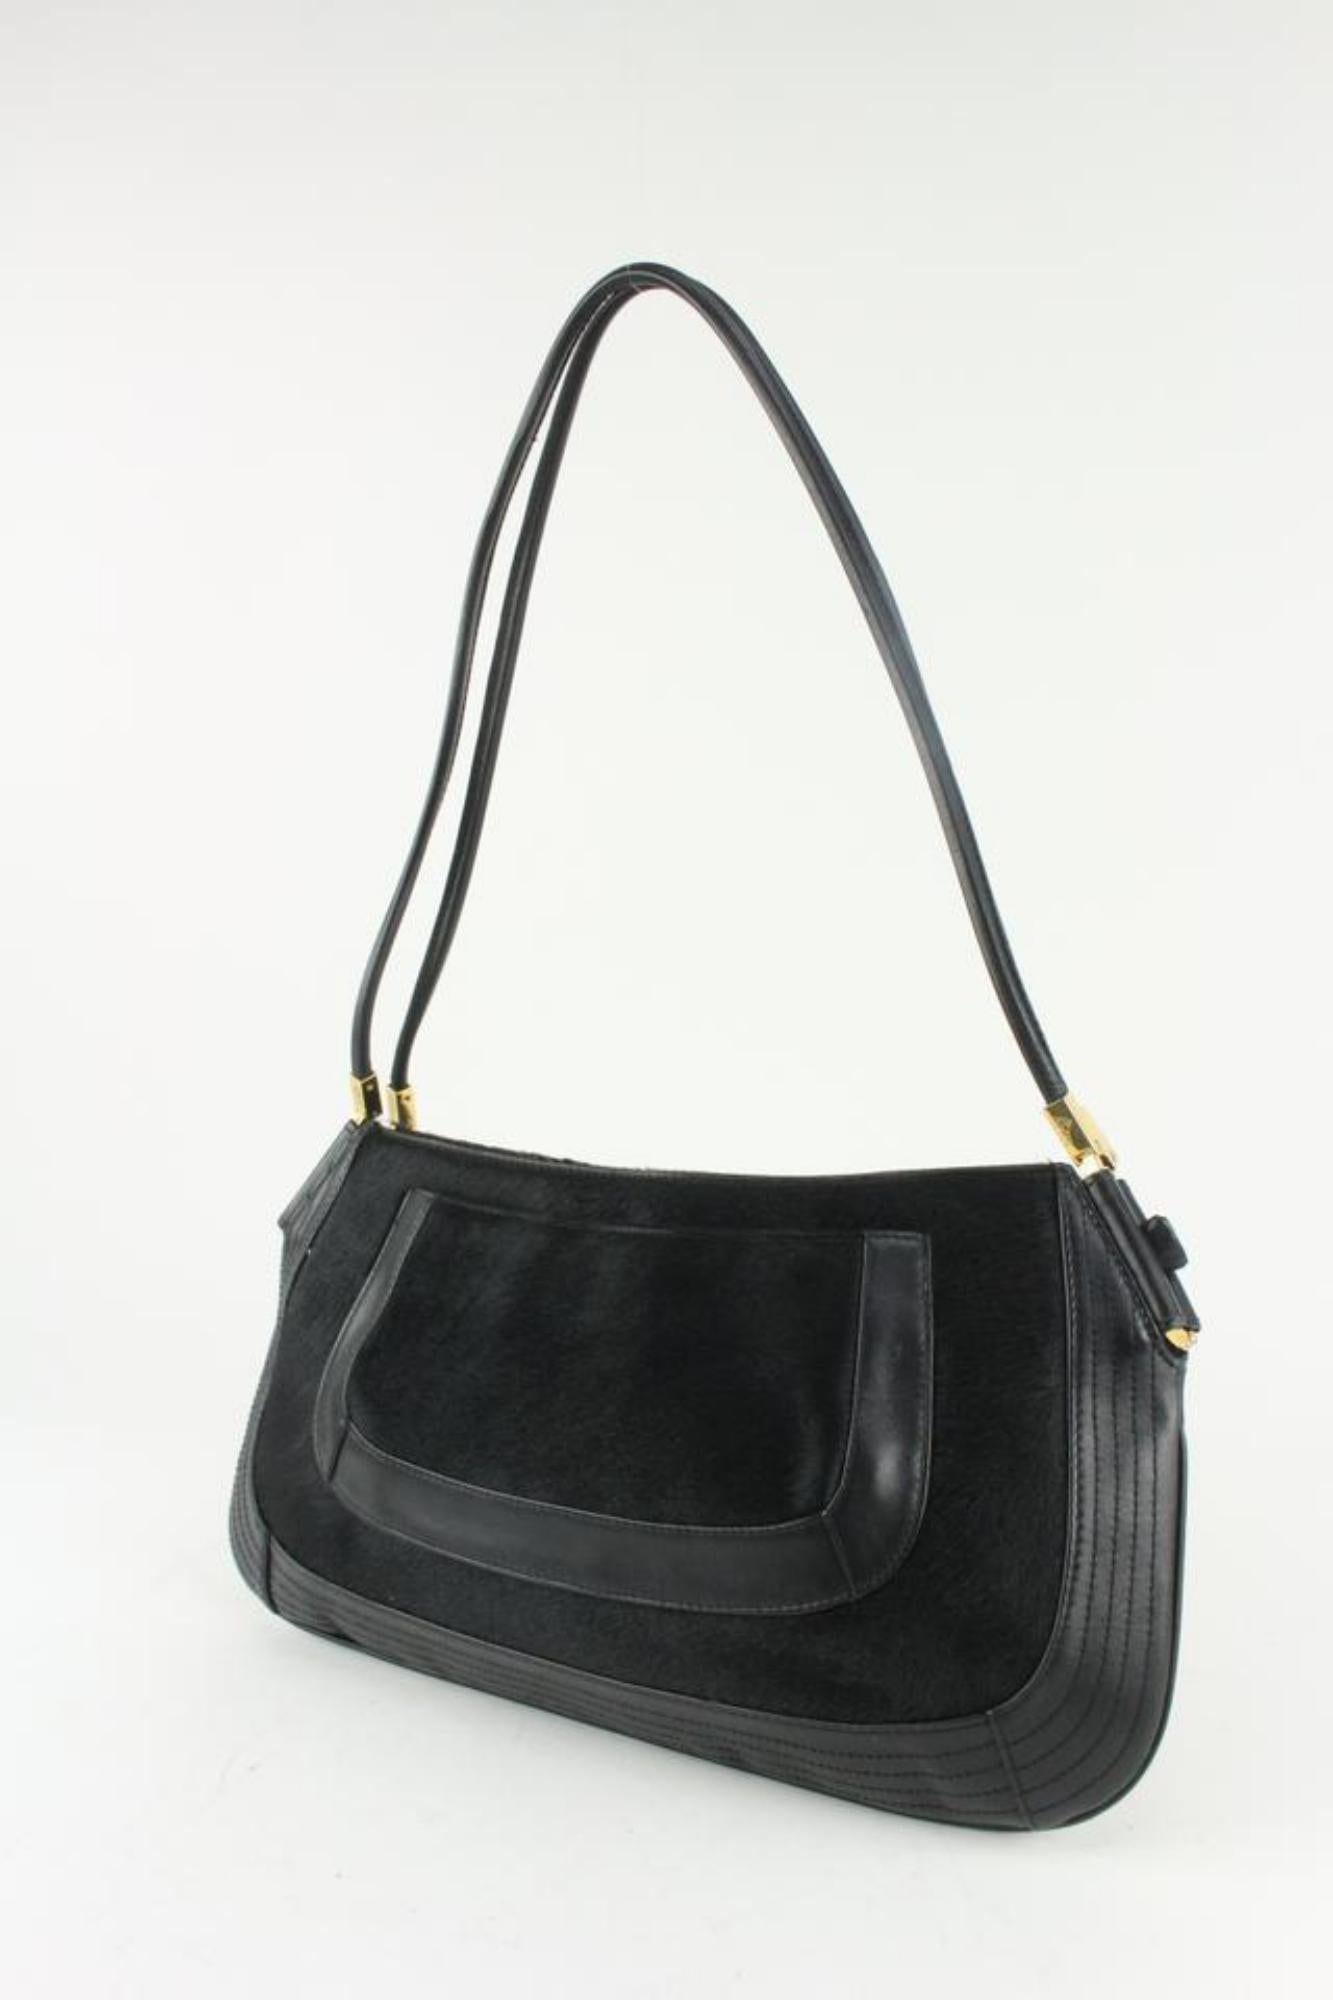 Versace Black x Gold Pony Hair Fur Shoulder bag 1216v27 For Sale 8